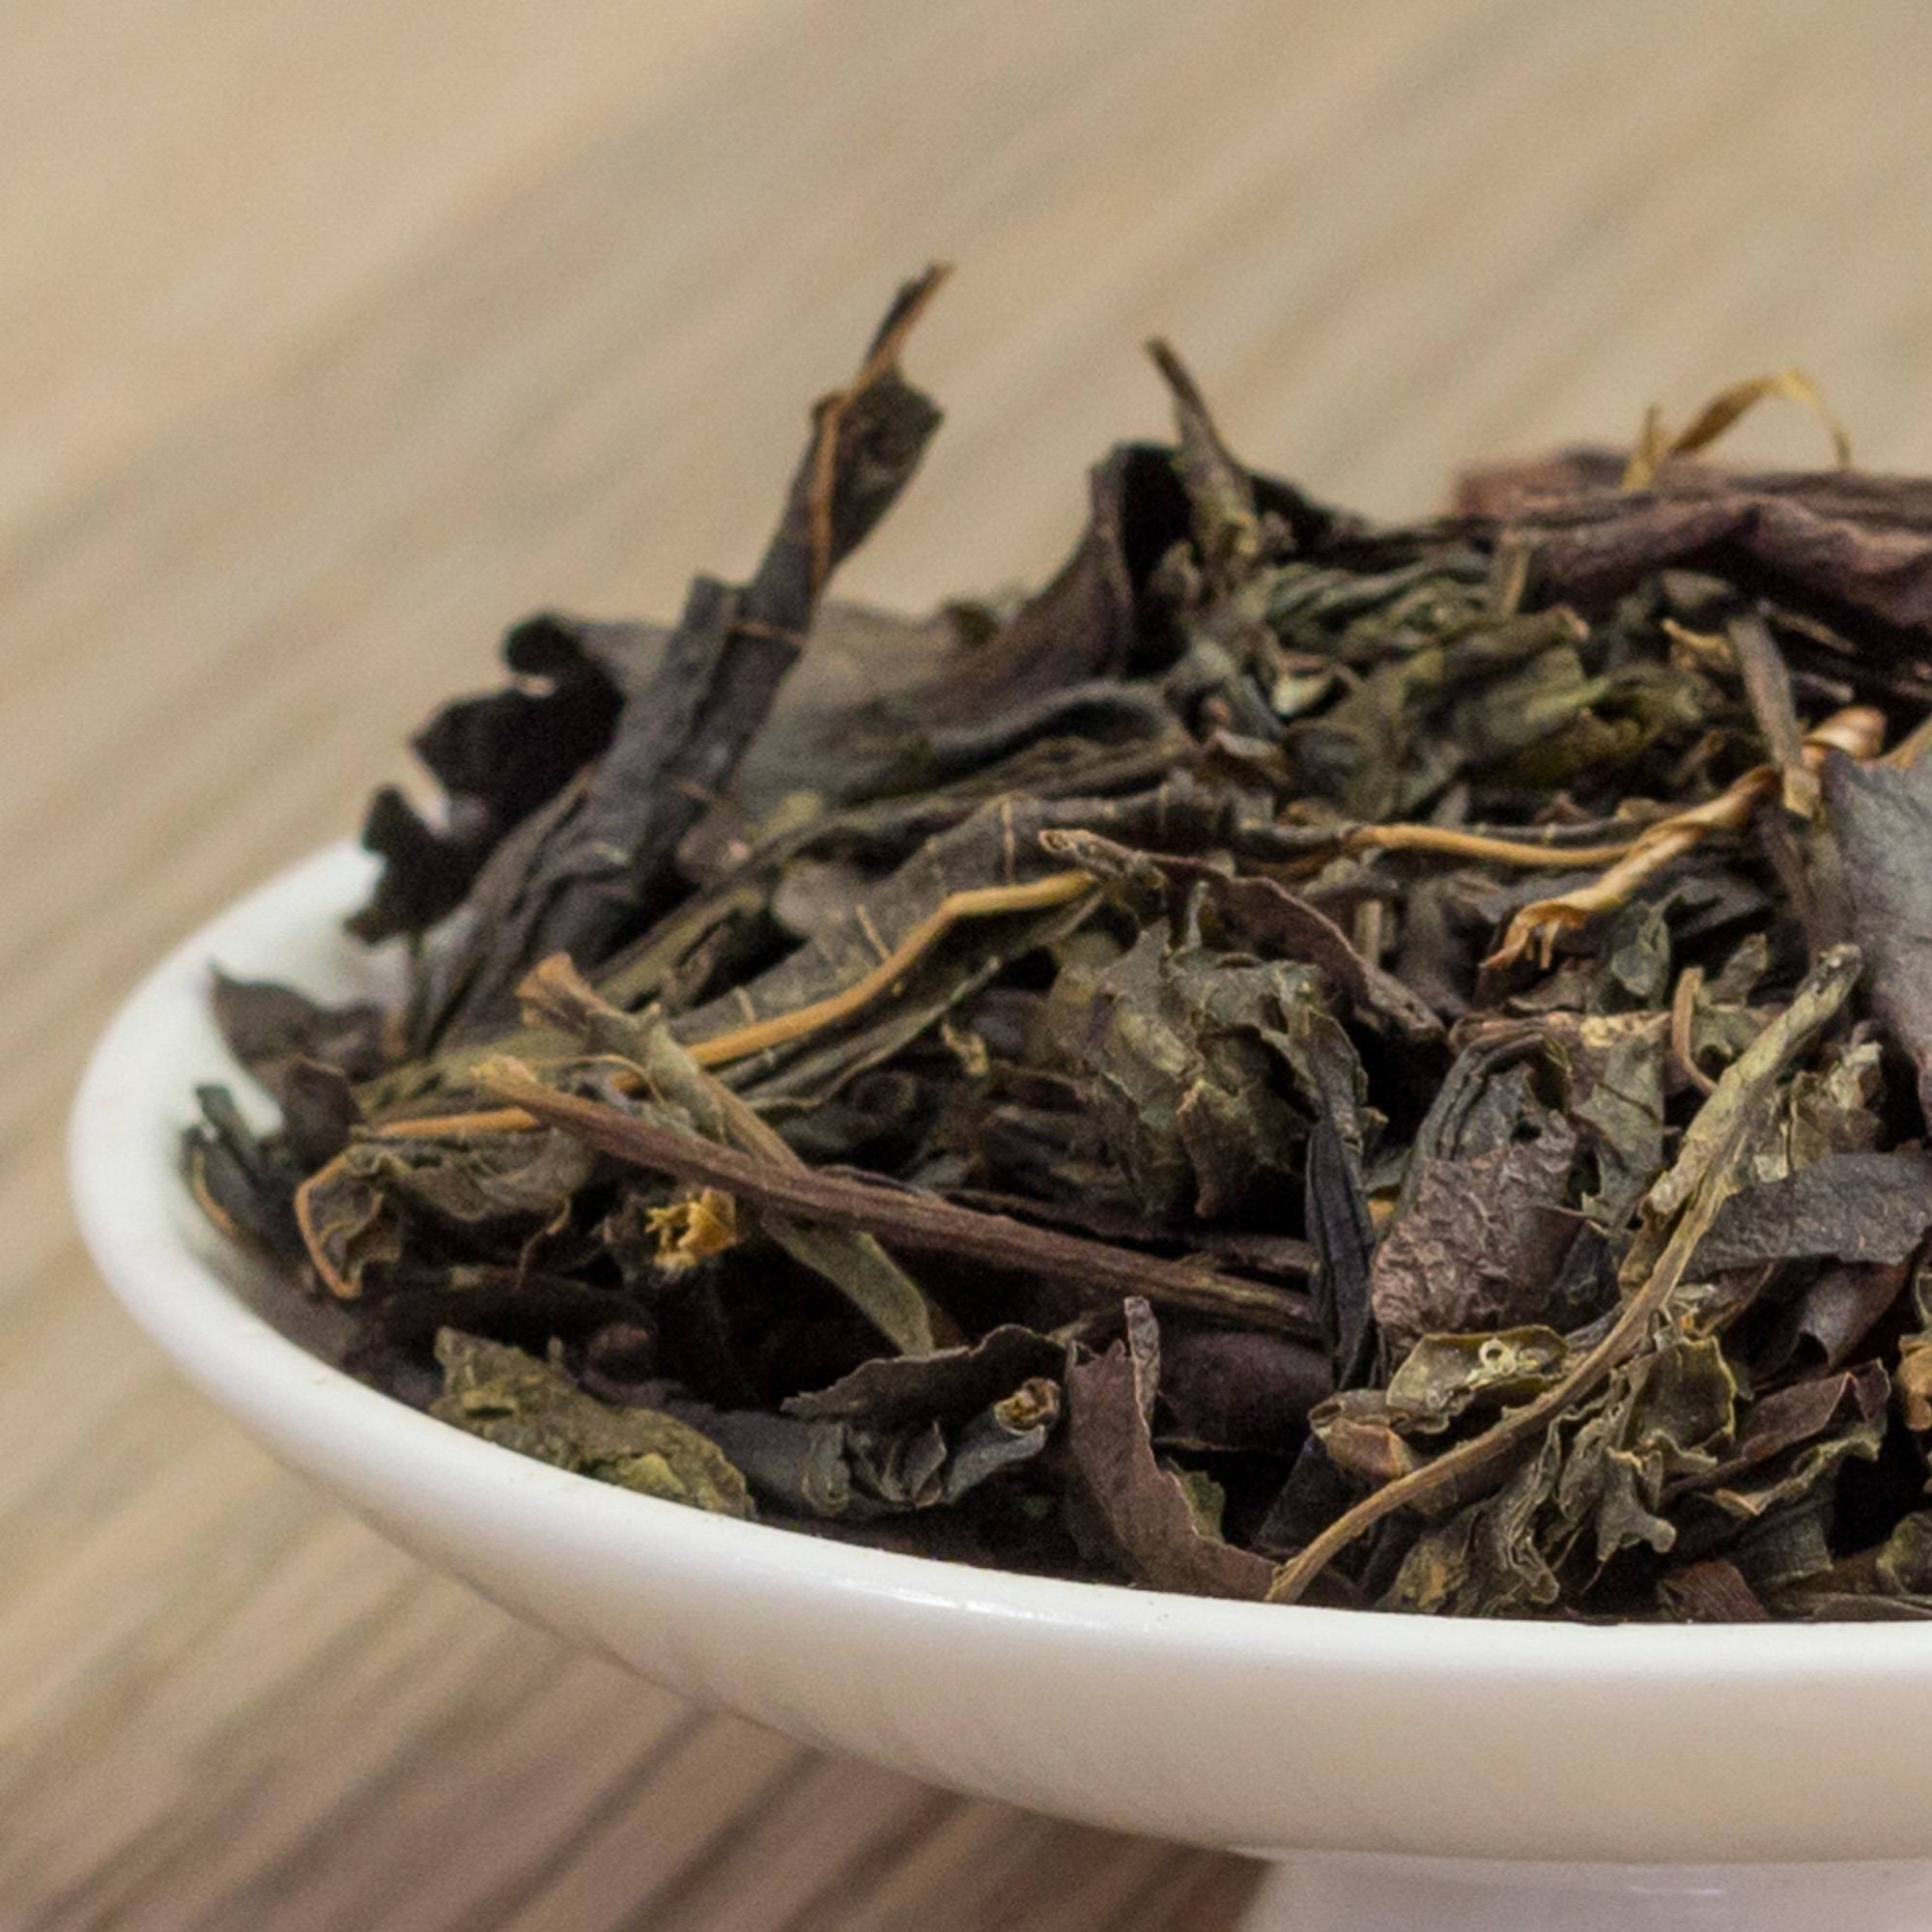 Бадан-чай: польза и вред при употреблении, противопоказания, рецепты и правила заваривания